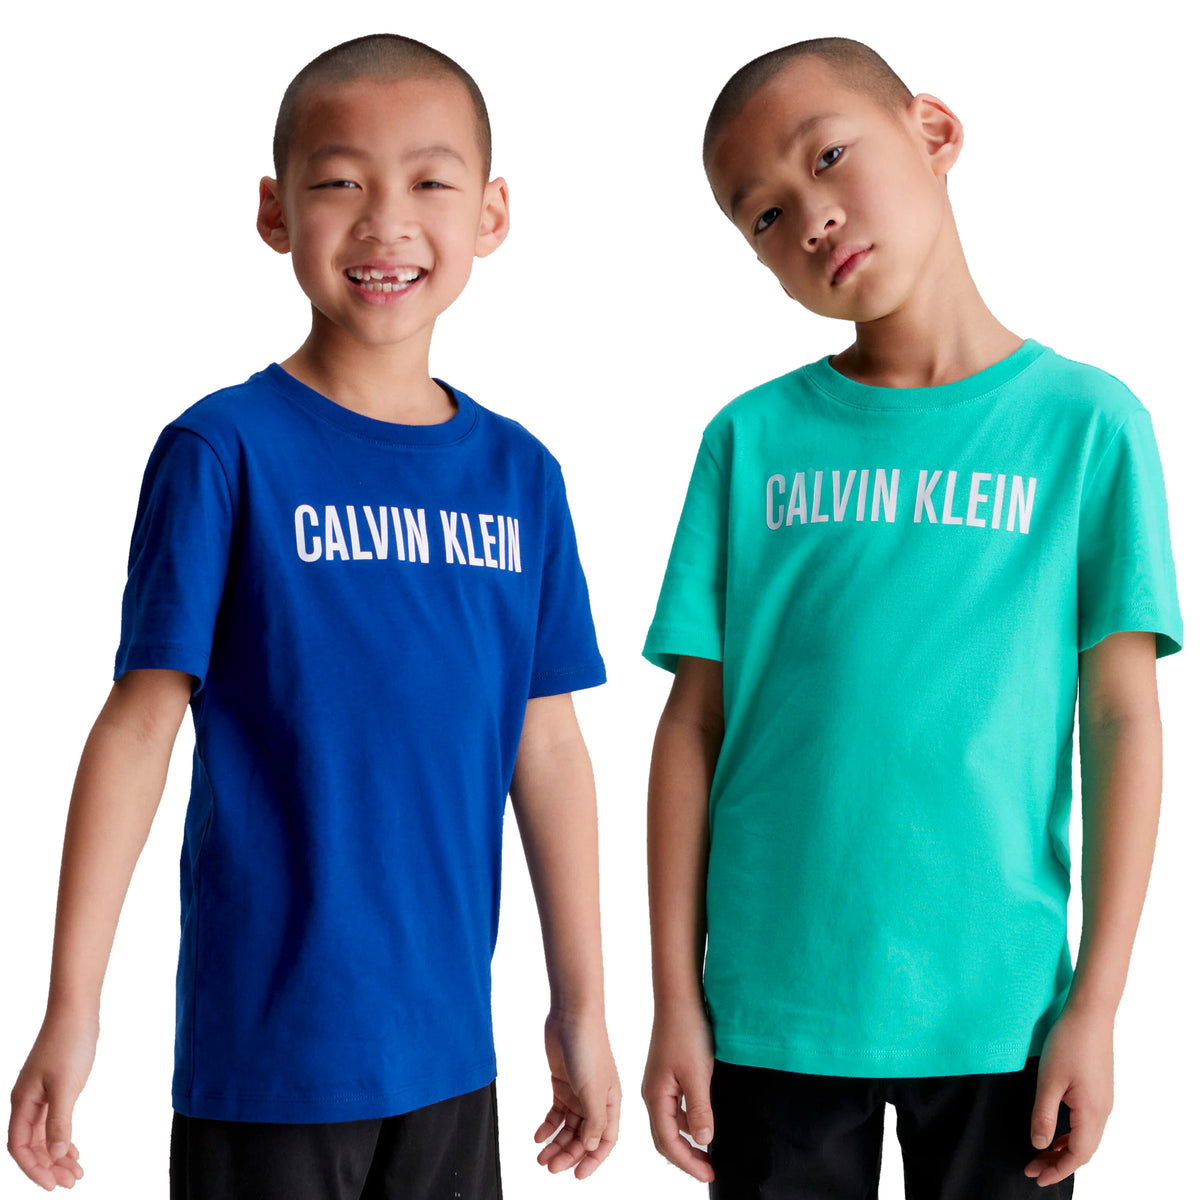 Calvin Klein Boys Intense Power T-Shirt - 2 Pack, 01, B70B700431, Lightteal/ W/ Boldblue